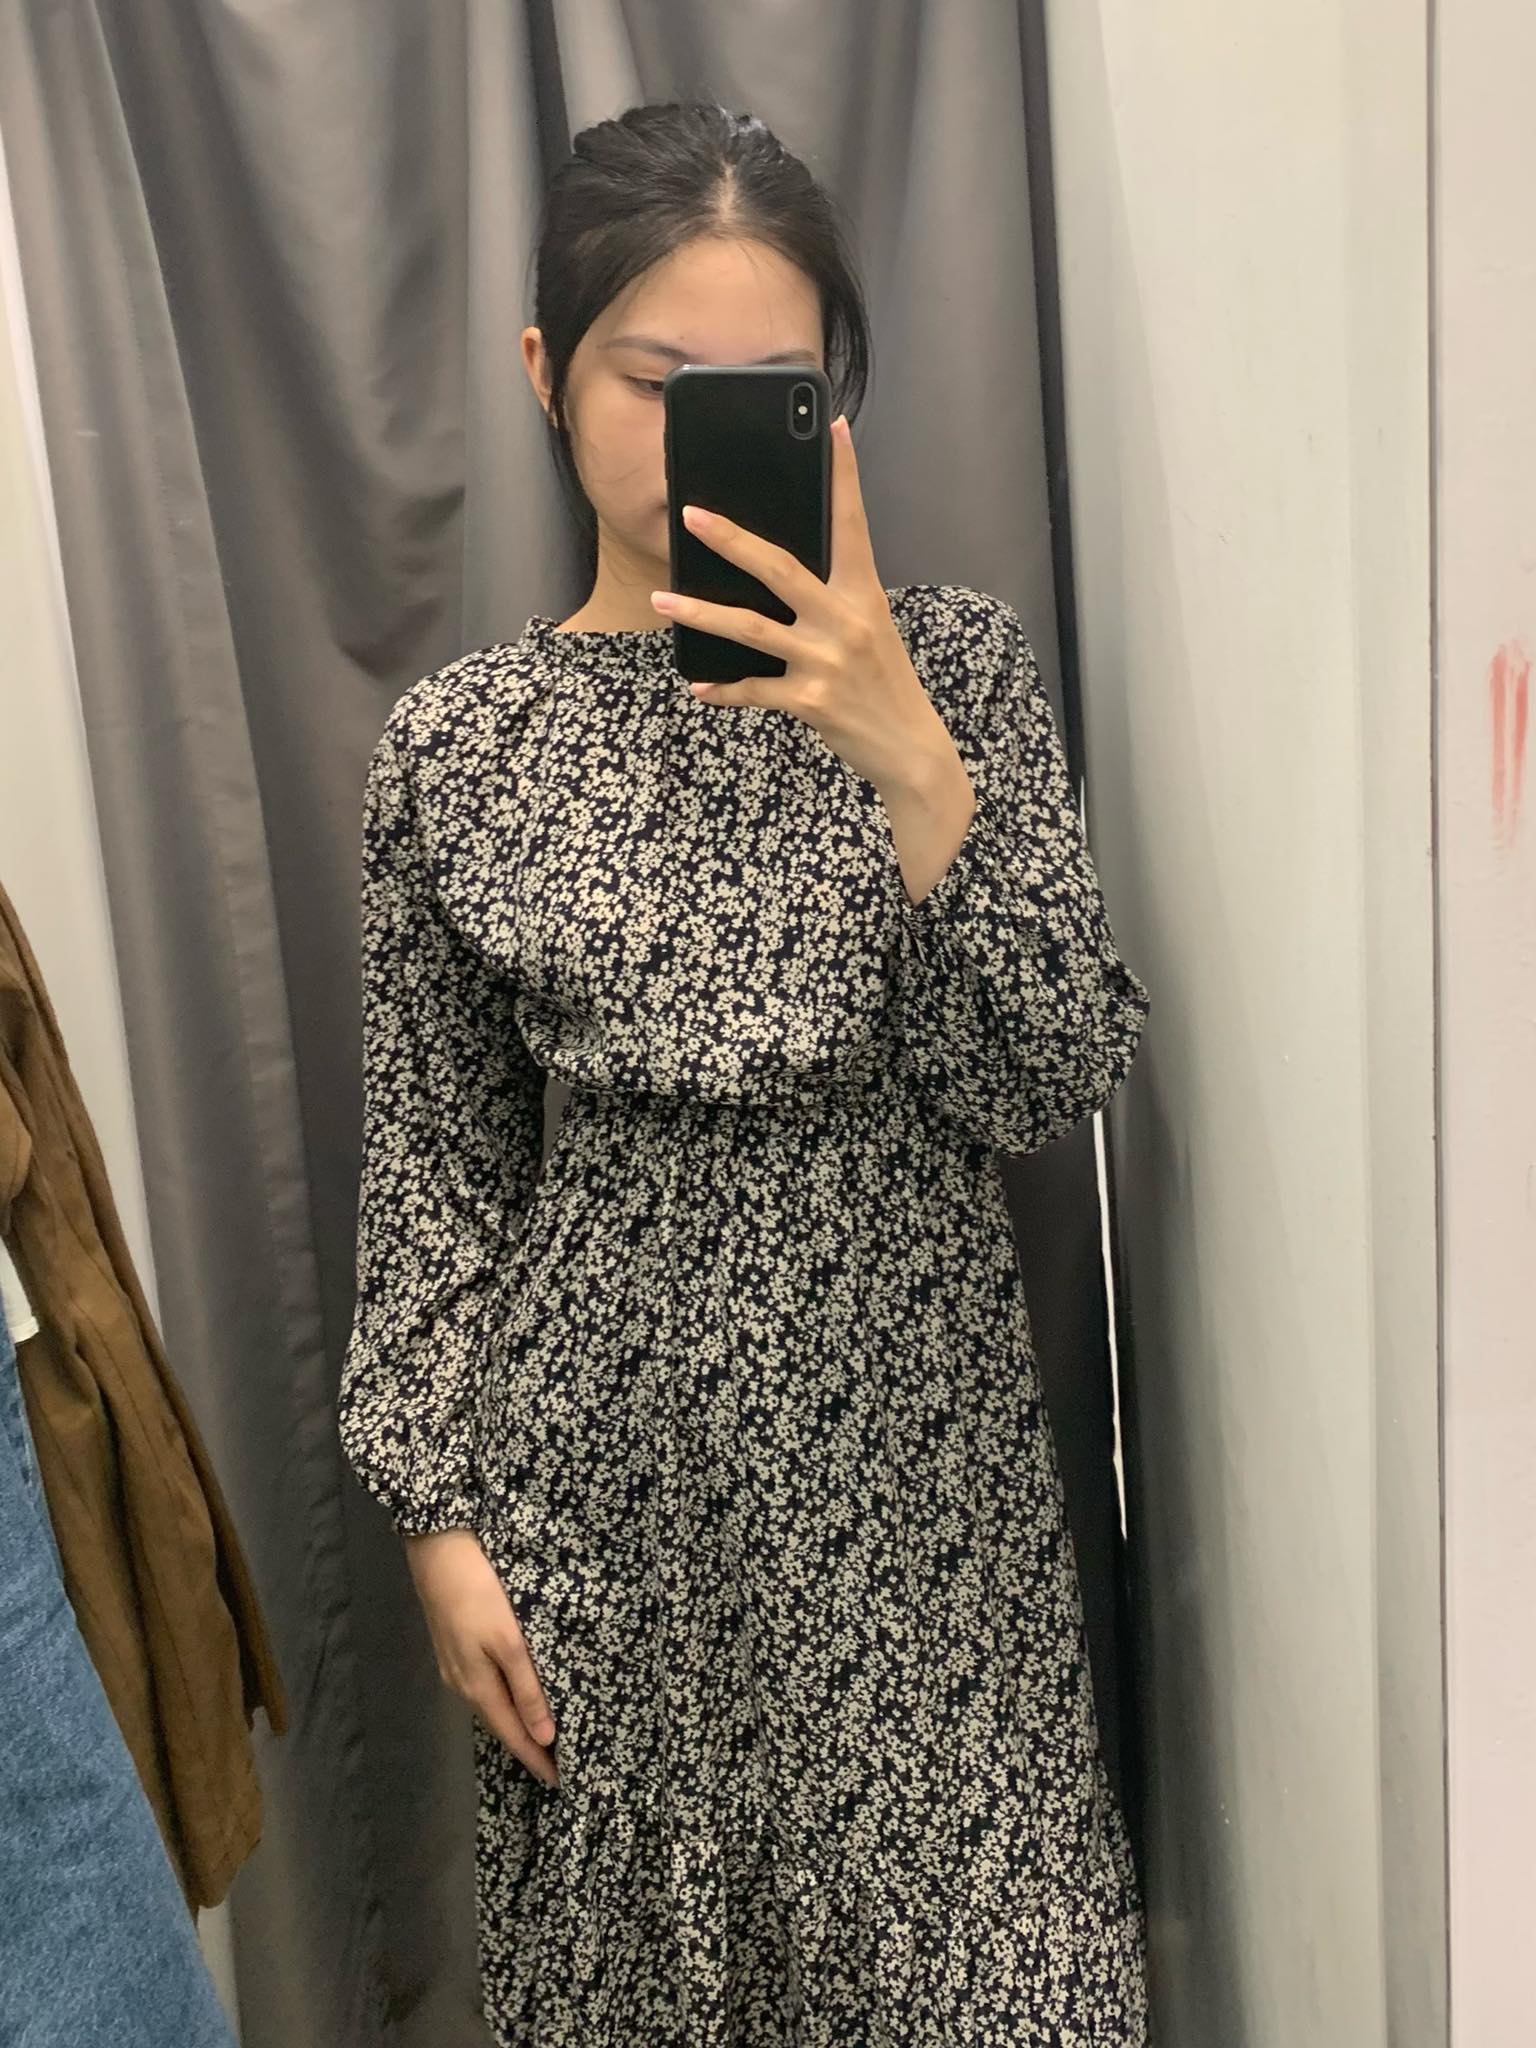 Đi mua sắm tại 3 cửa hàng second-hand đình đám Hà Nội: Mình tìm được nhiều mẫu sơ mi, váy hoa nhí siêu xinh giá từ 150k - Ảnh 8.